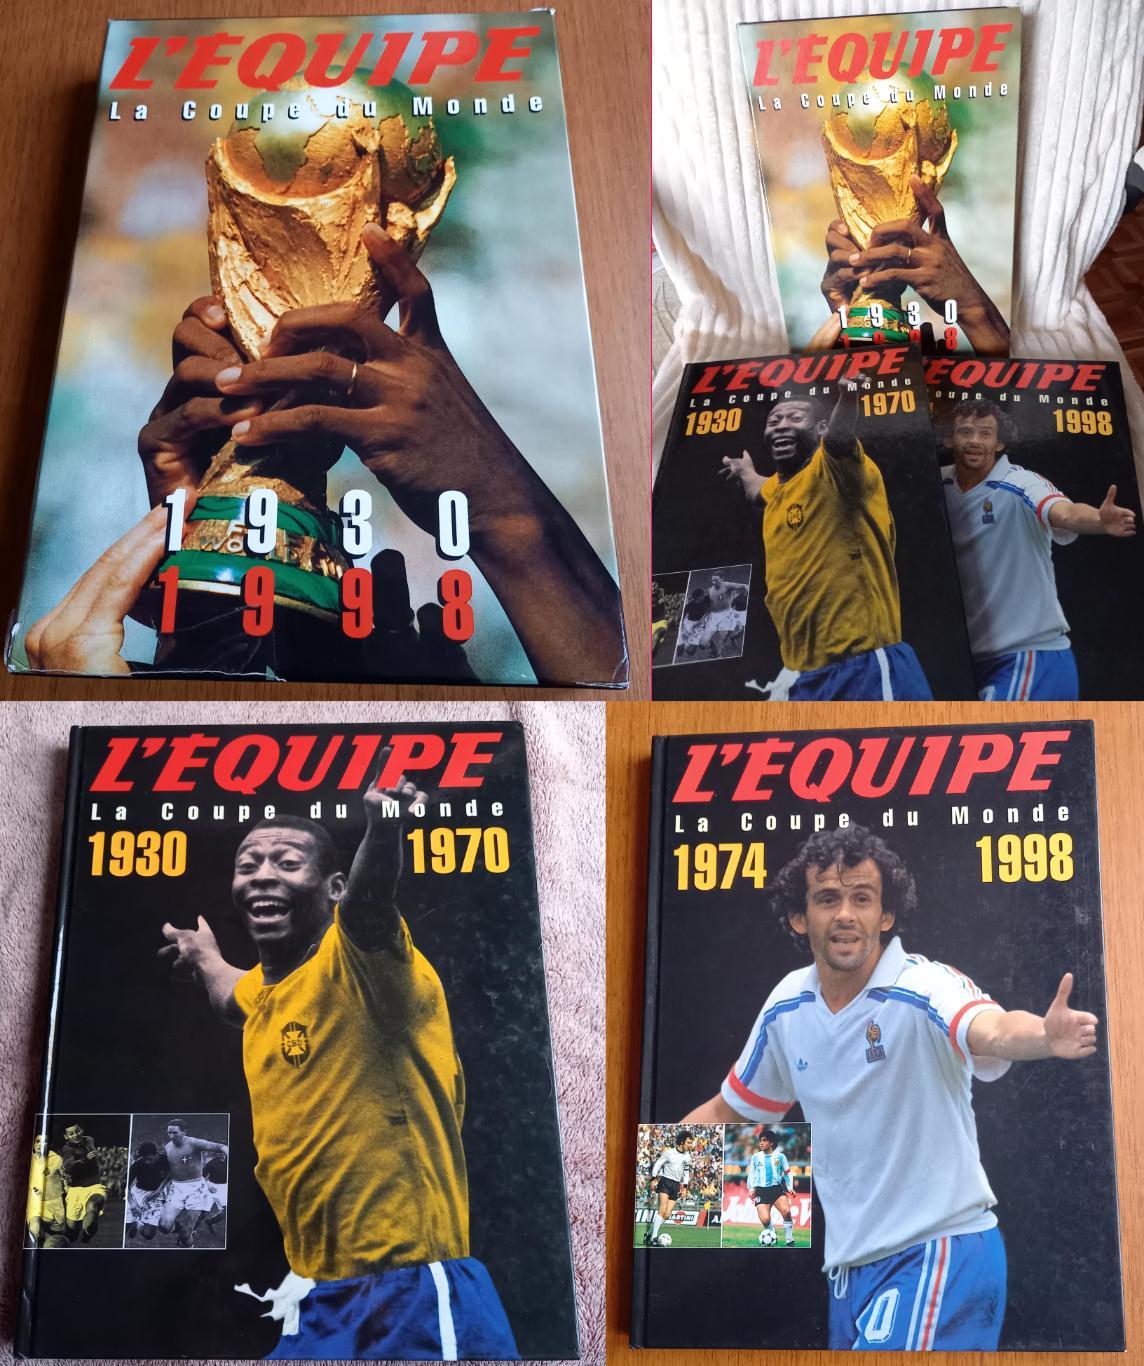 Футбол. История чемпионатов мира 1930-1998 от L'Equipe. 2 тома (французский).